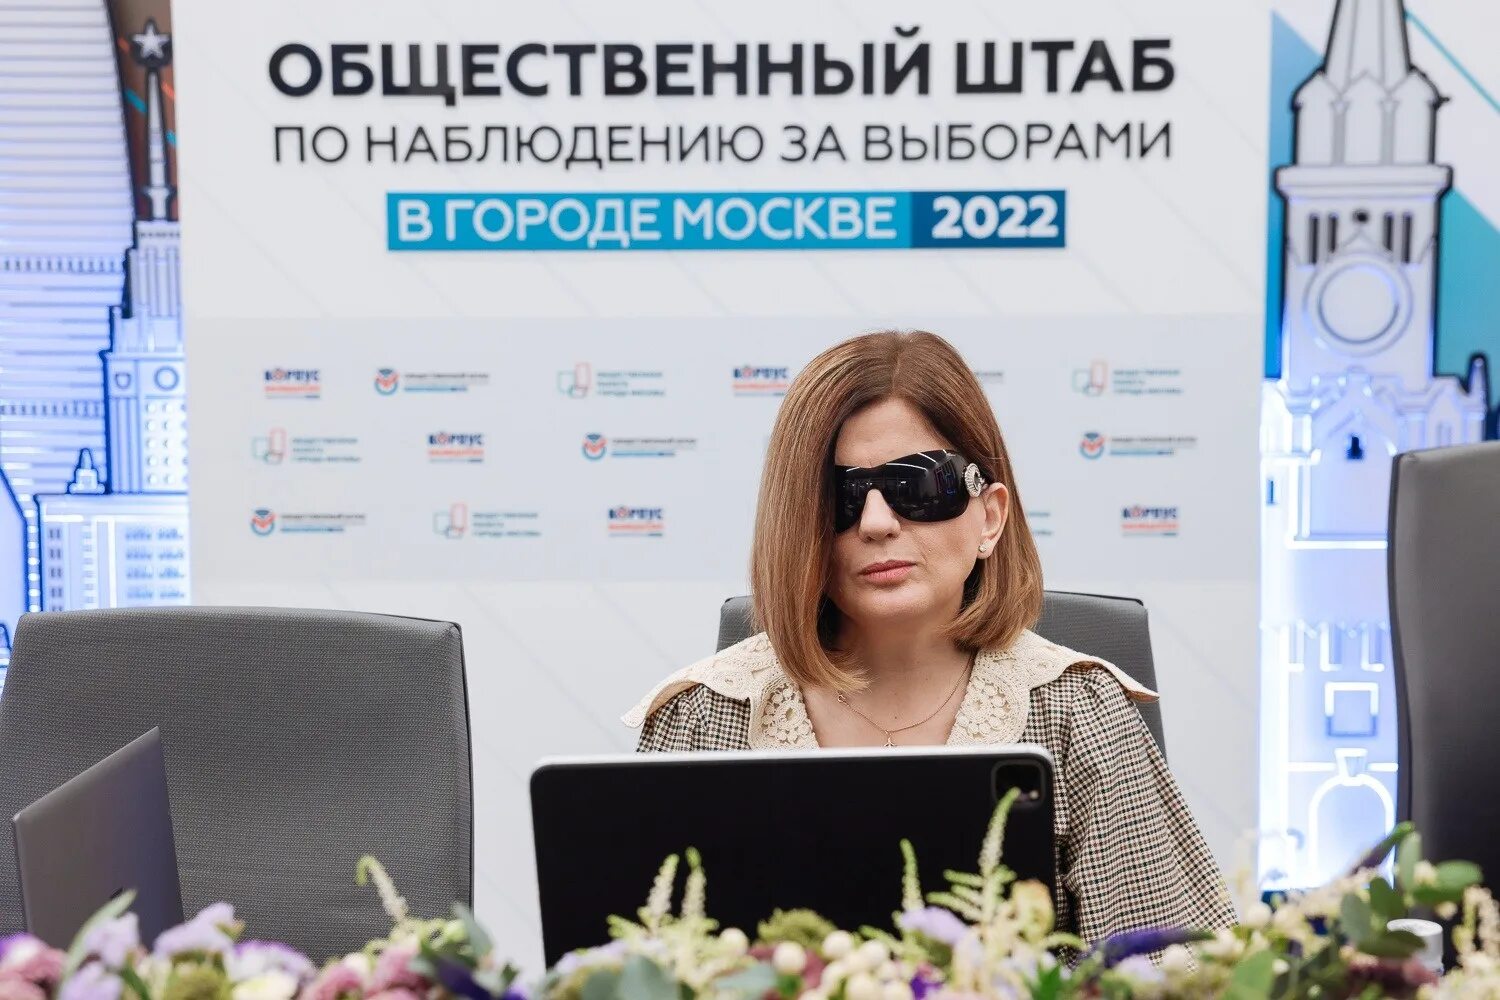 Гурцкая наблюдатель на выборах 2022. Гурцкая выборы 2022. Наблюдатели на выборах в москве